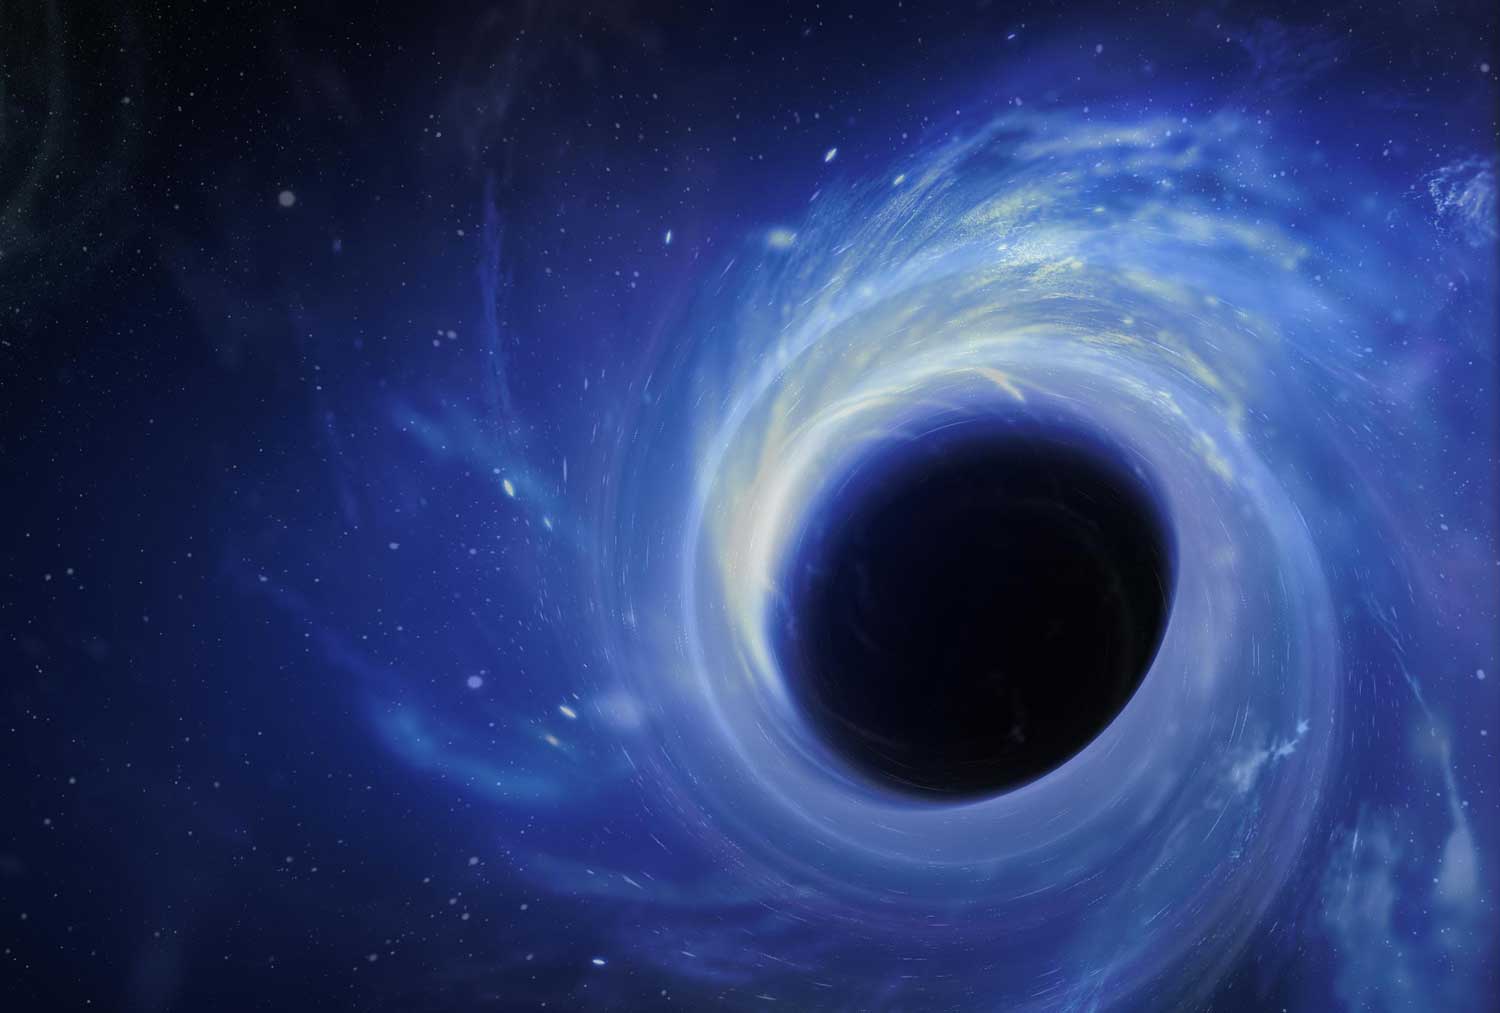 خطة جديدة جامحة تقترح إمكانية استخراج الطاقة من الثقب الأسود - الاستفادة من الطاقة الهائلة التي تنتجها نظريًا الثقوب السوداء الدوارة